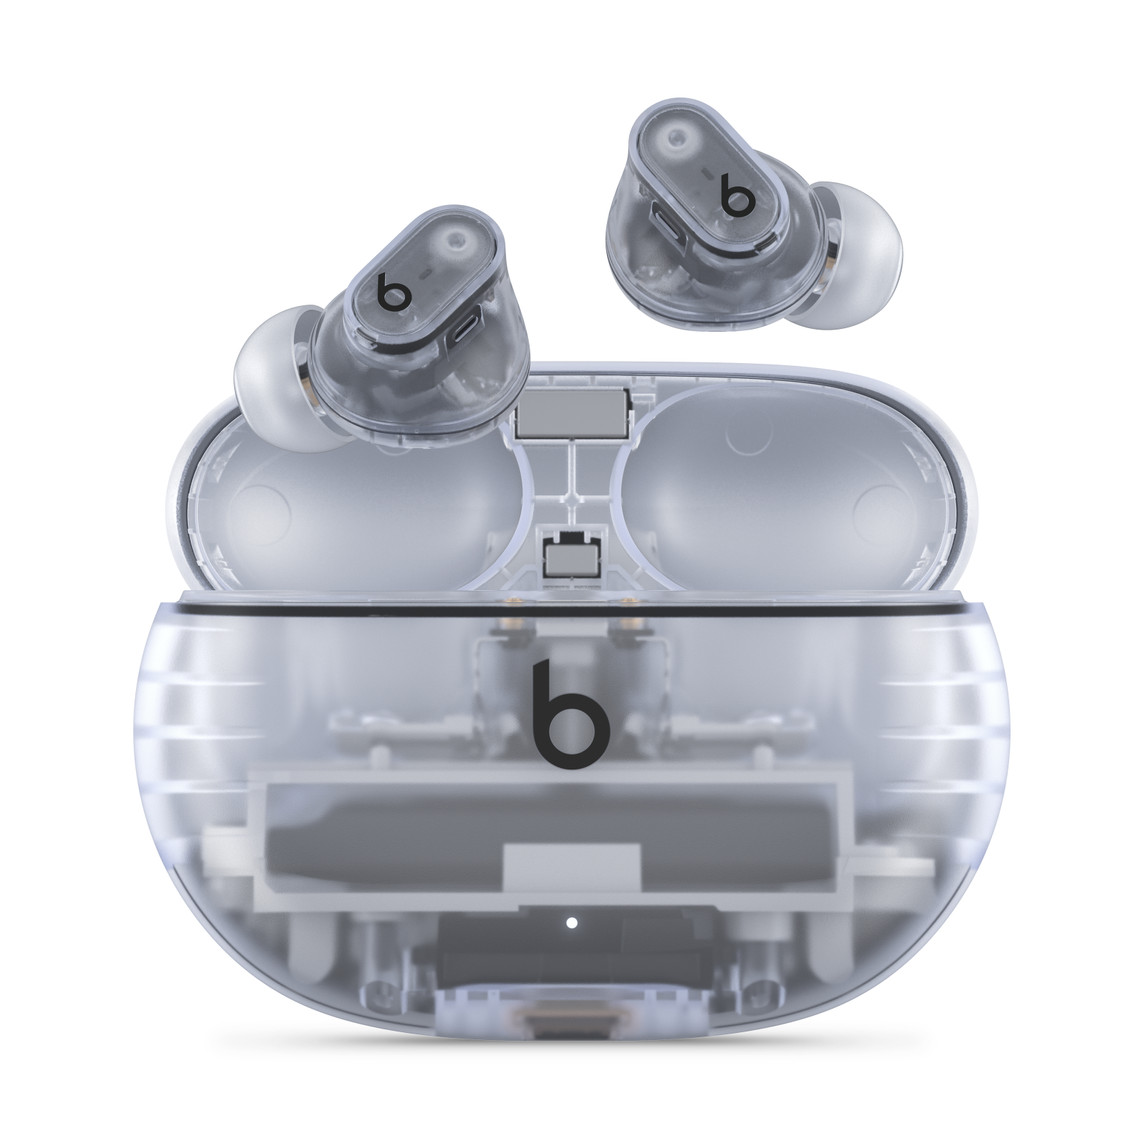 Beats Studio Buds verkligt trådlösa brusreducerande öronsnäckor i transparent med Beats-logotyp ovanför ett praktiskt laddningsetui.